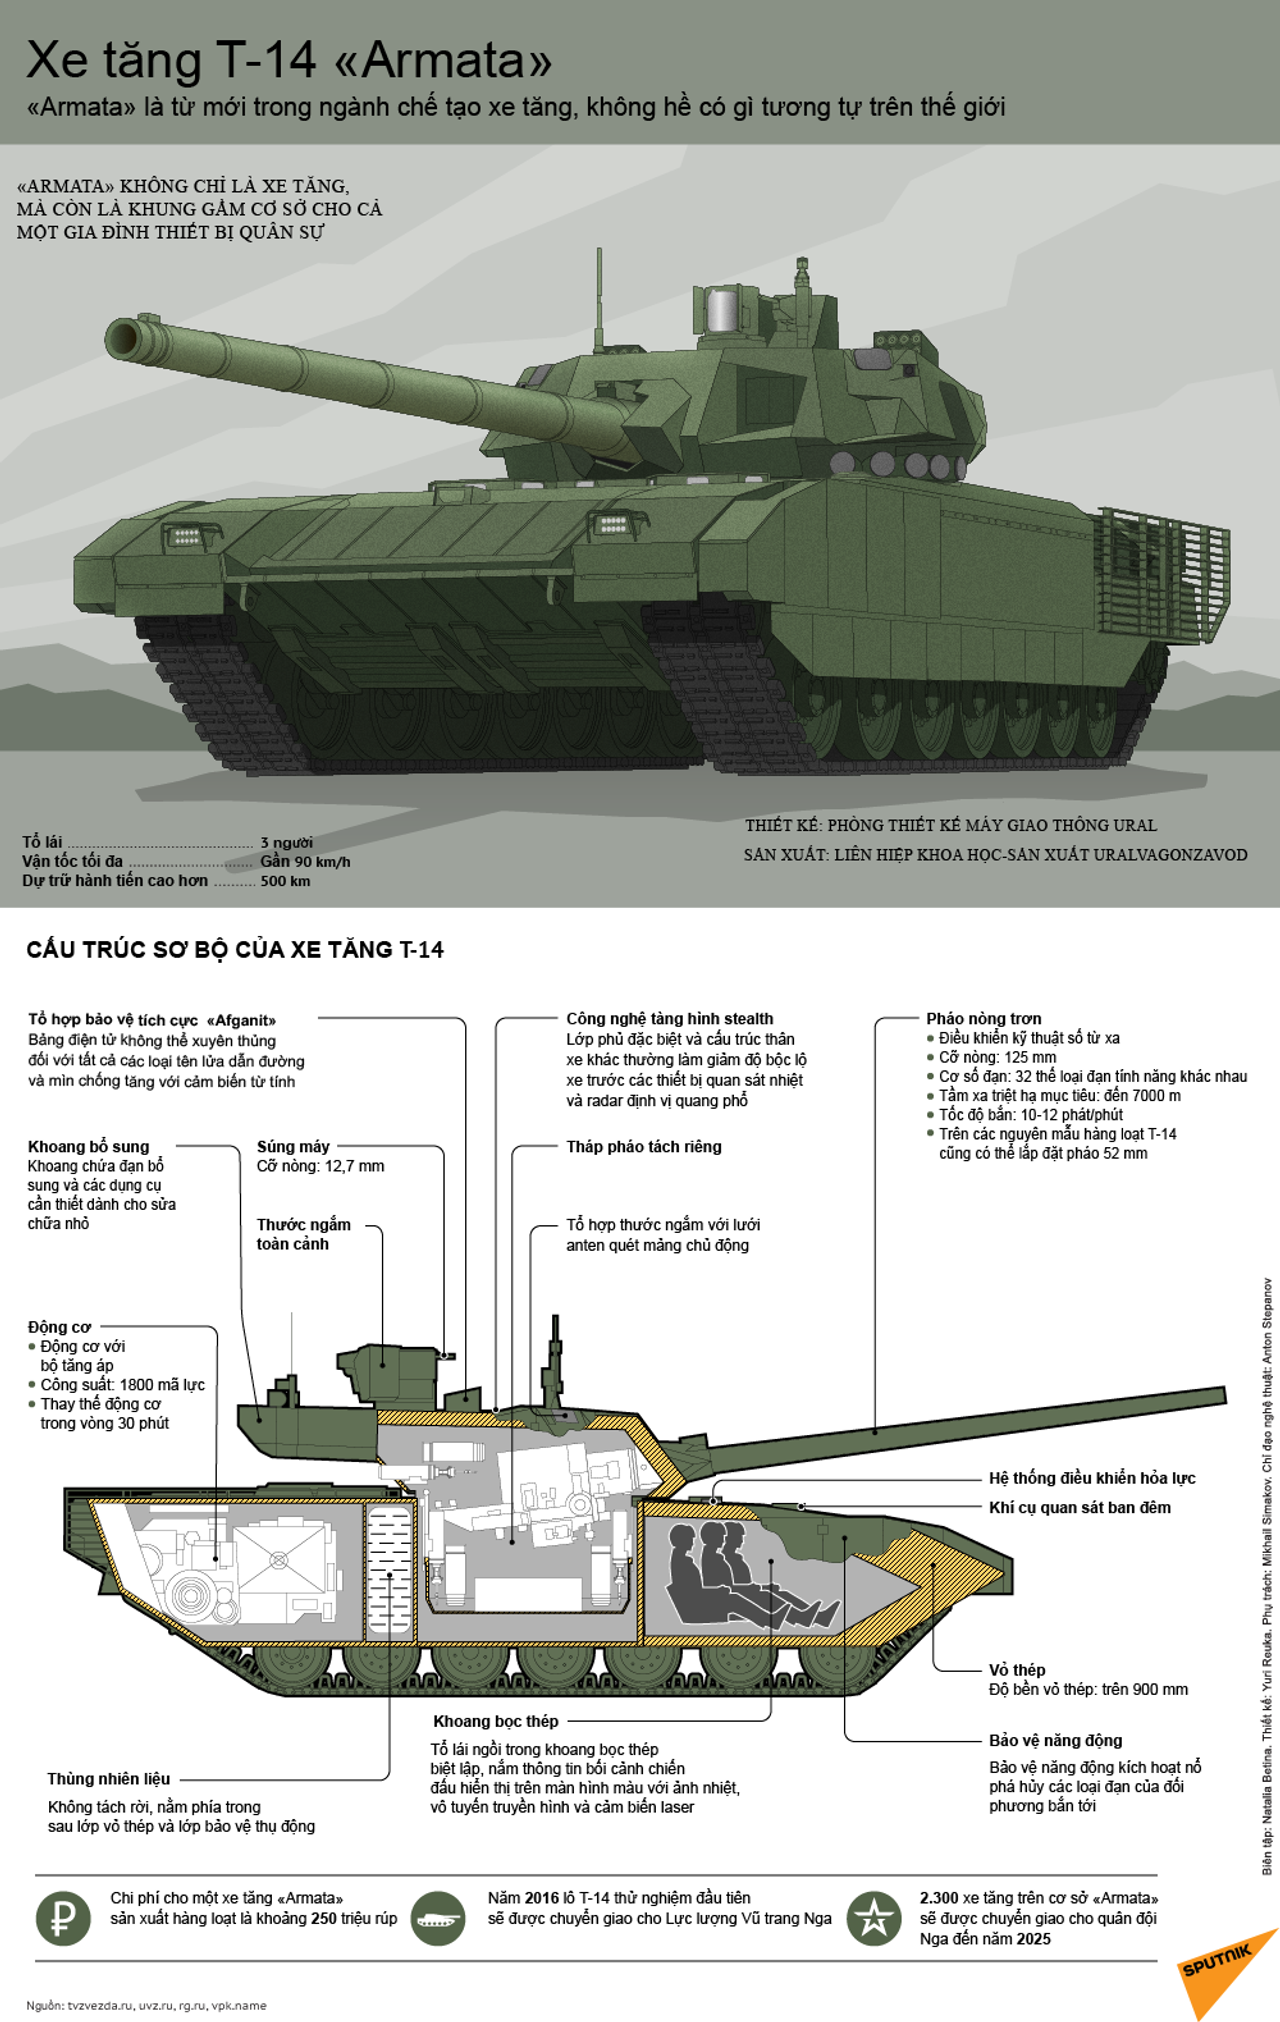 Chế tạo xe tăng Armata: Xem qua các hình ảnh chi tiết của xe tăng Armata - một trong những dòng xe tăng nổi tiếng và hiện đại nhất của Nga. Từng chi tiết được thiết kế với chất lượng cao cùng với khả năng chiến đấu vô cùng đáng kinh ngạc!